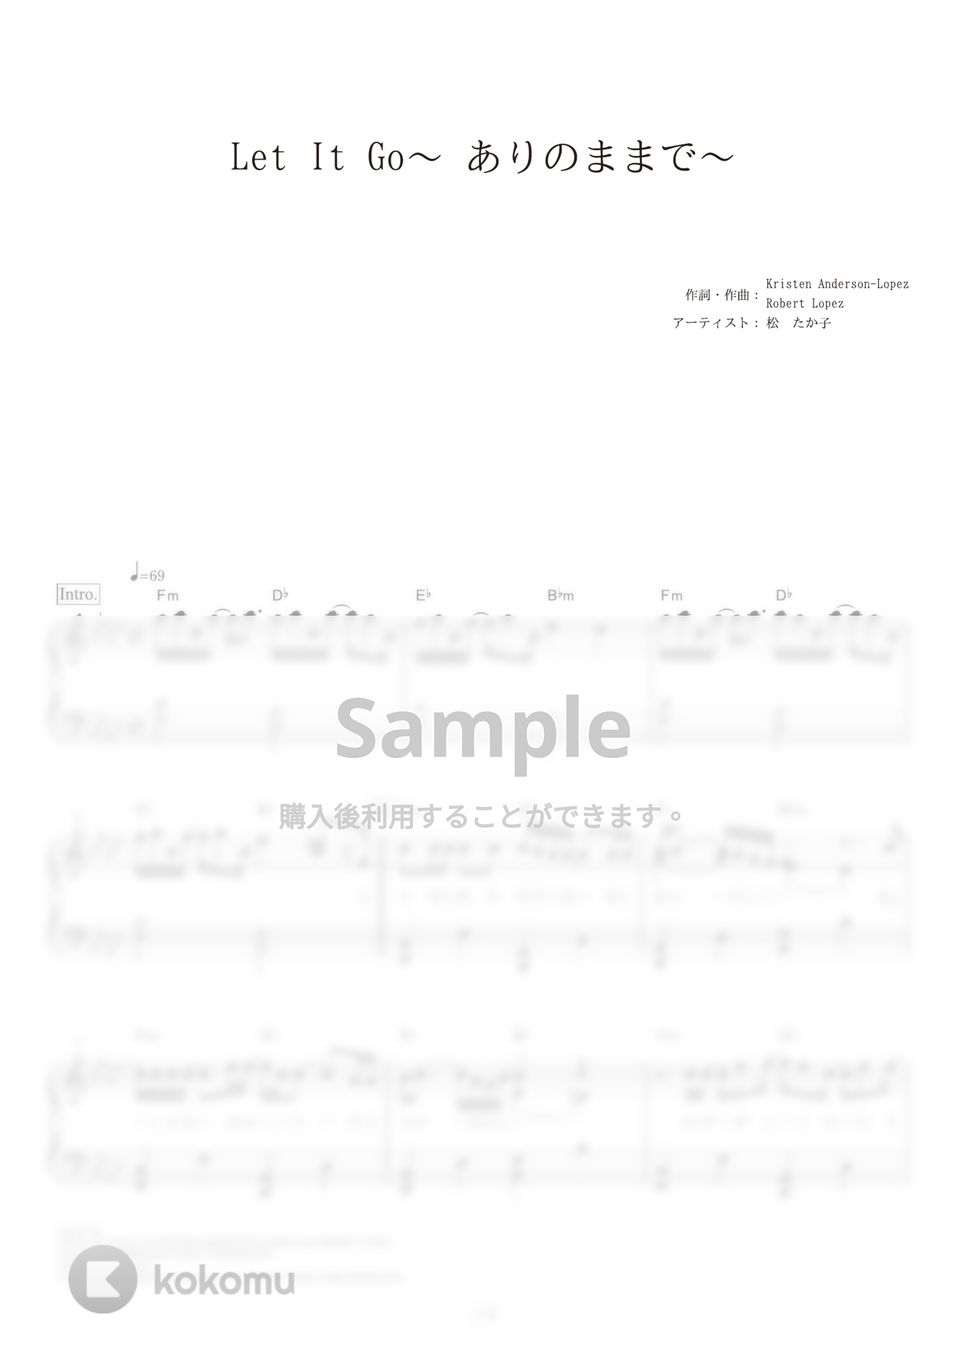 松たか子 - レット・イット・ゴー (映画『アナと雪の女王』劇中歌) by ピアノの本棚